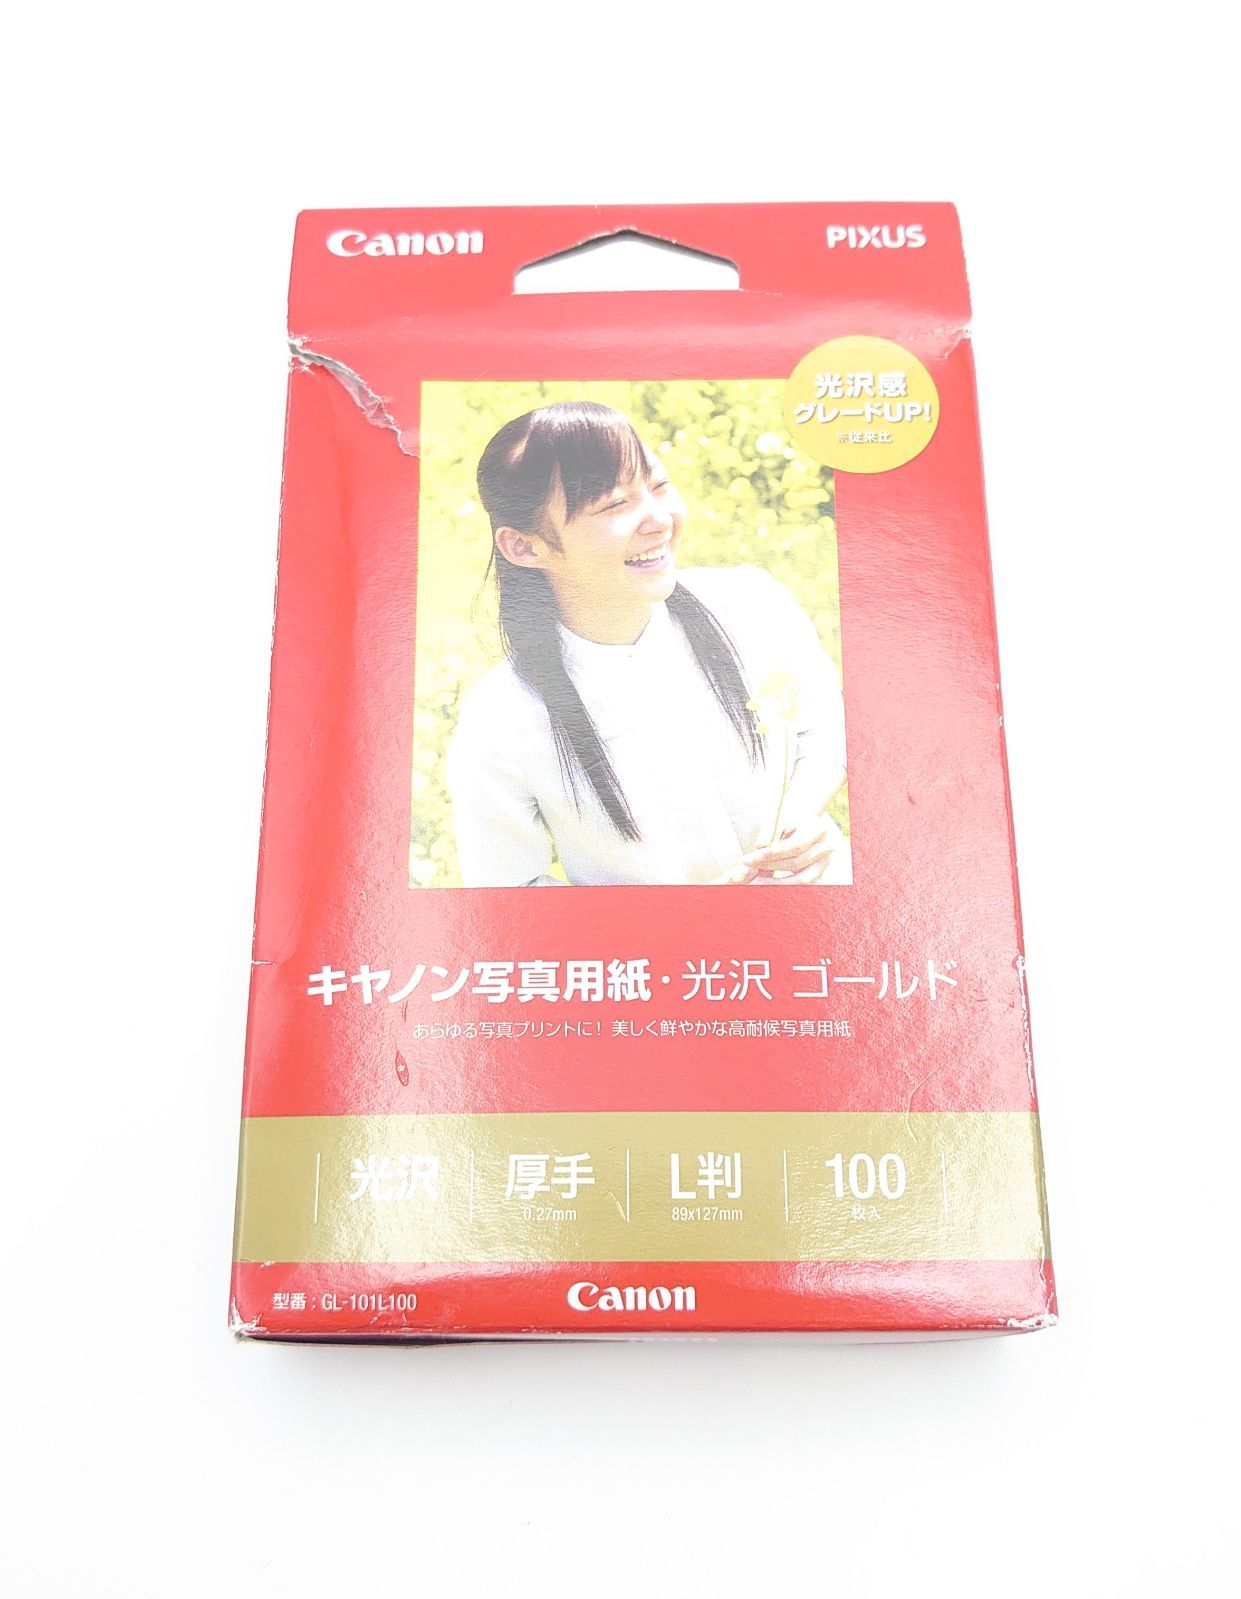 キヤノン CANON GL-101L100 キヤノン純正プリンタ用紙 写真用紙・光沢